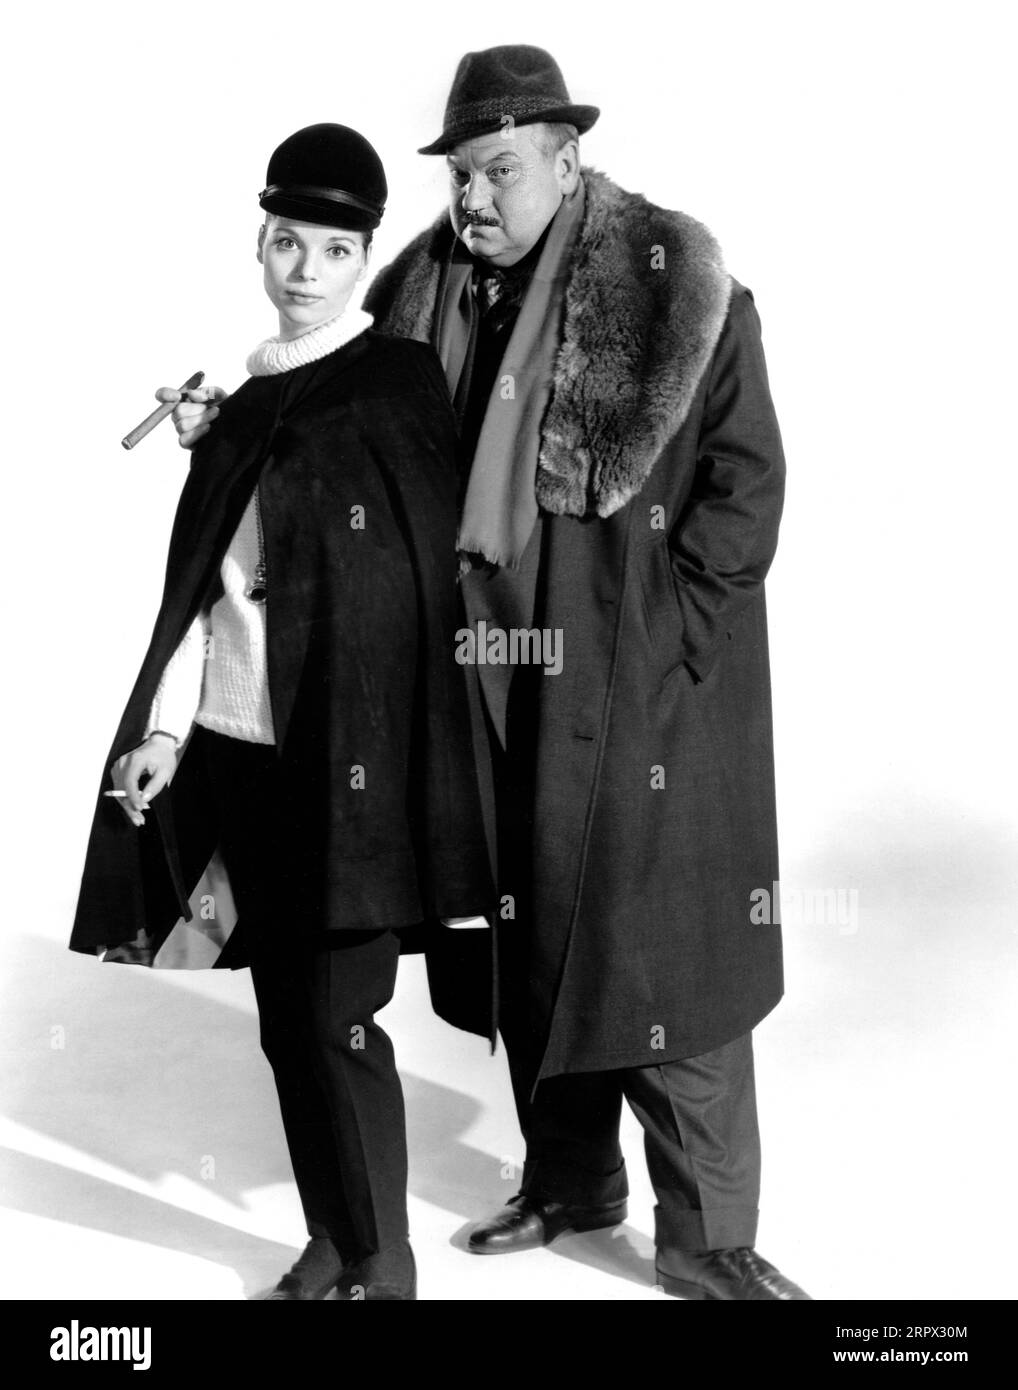 Elsa Martinelli, Orson Welles, portrait publicitaire pour le film britannique, 'The V.I.P.s', MGM, 1963 Banque D'Images